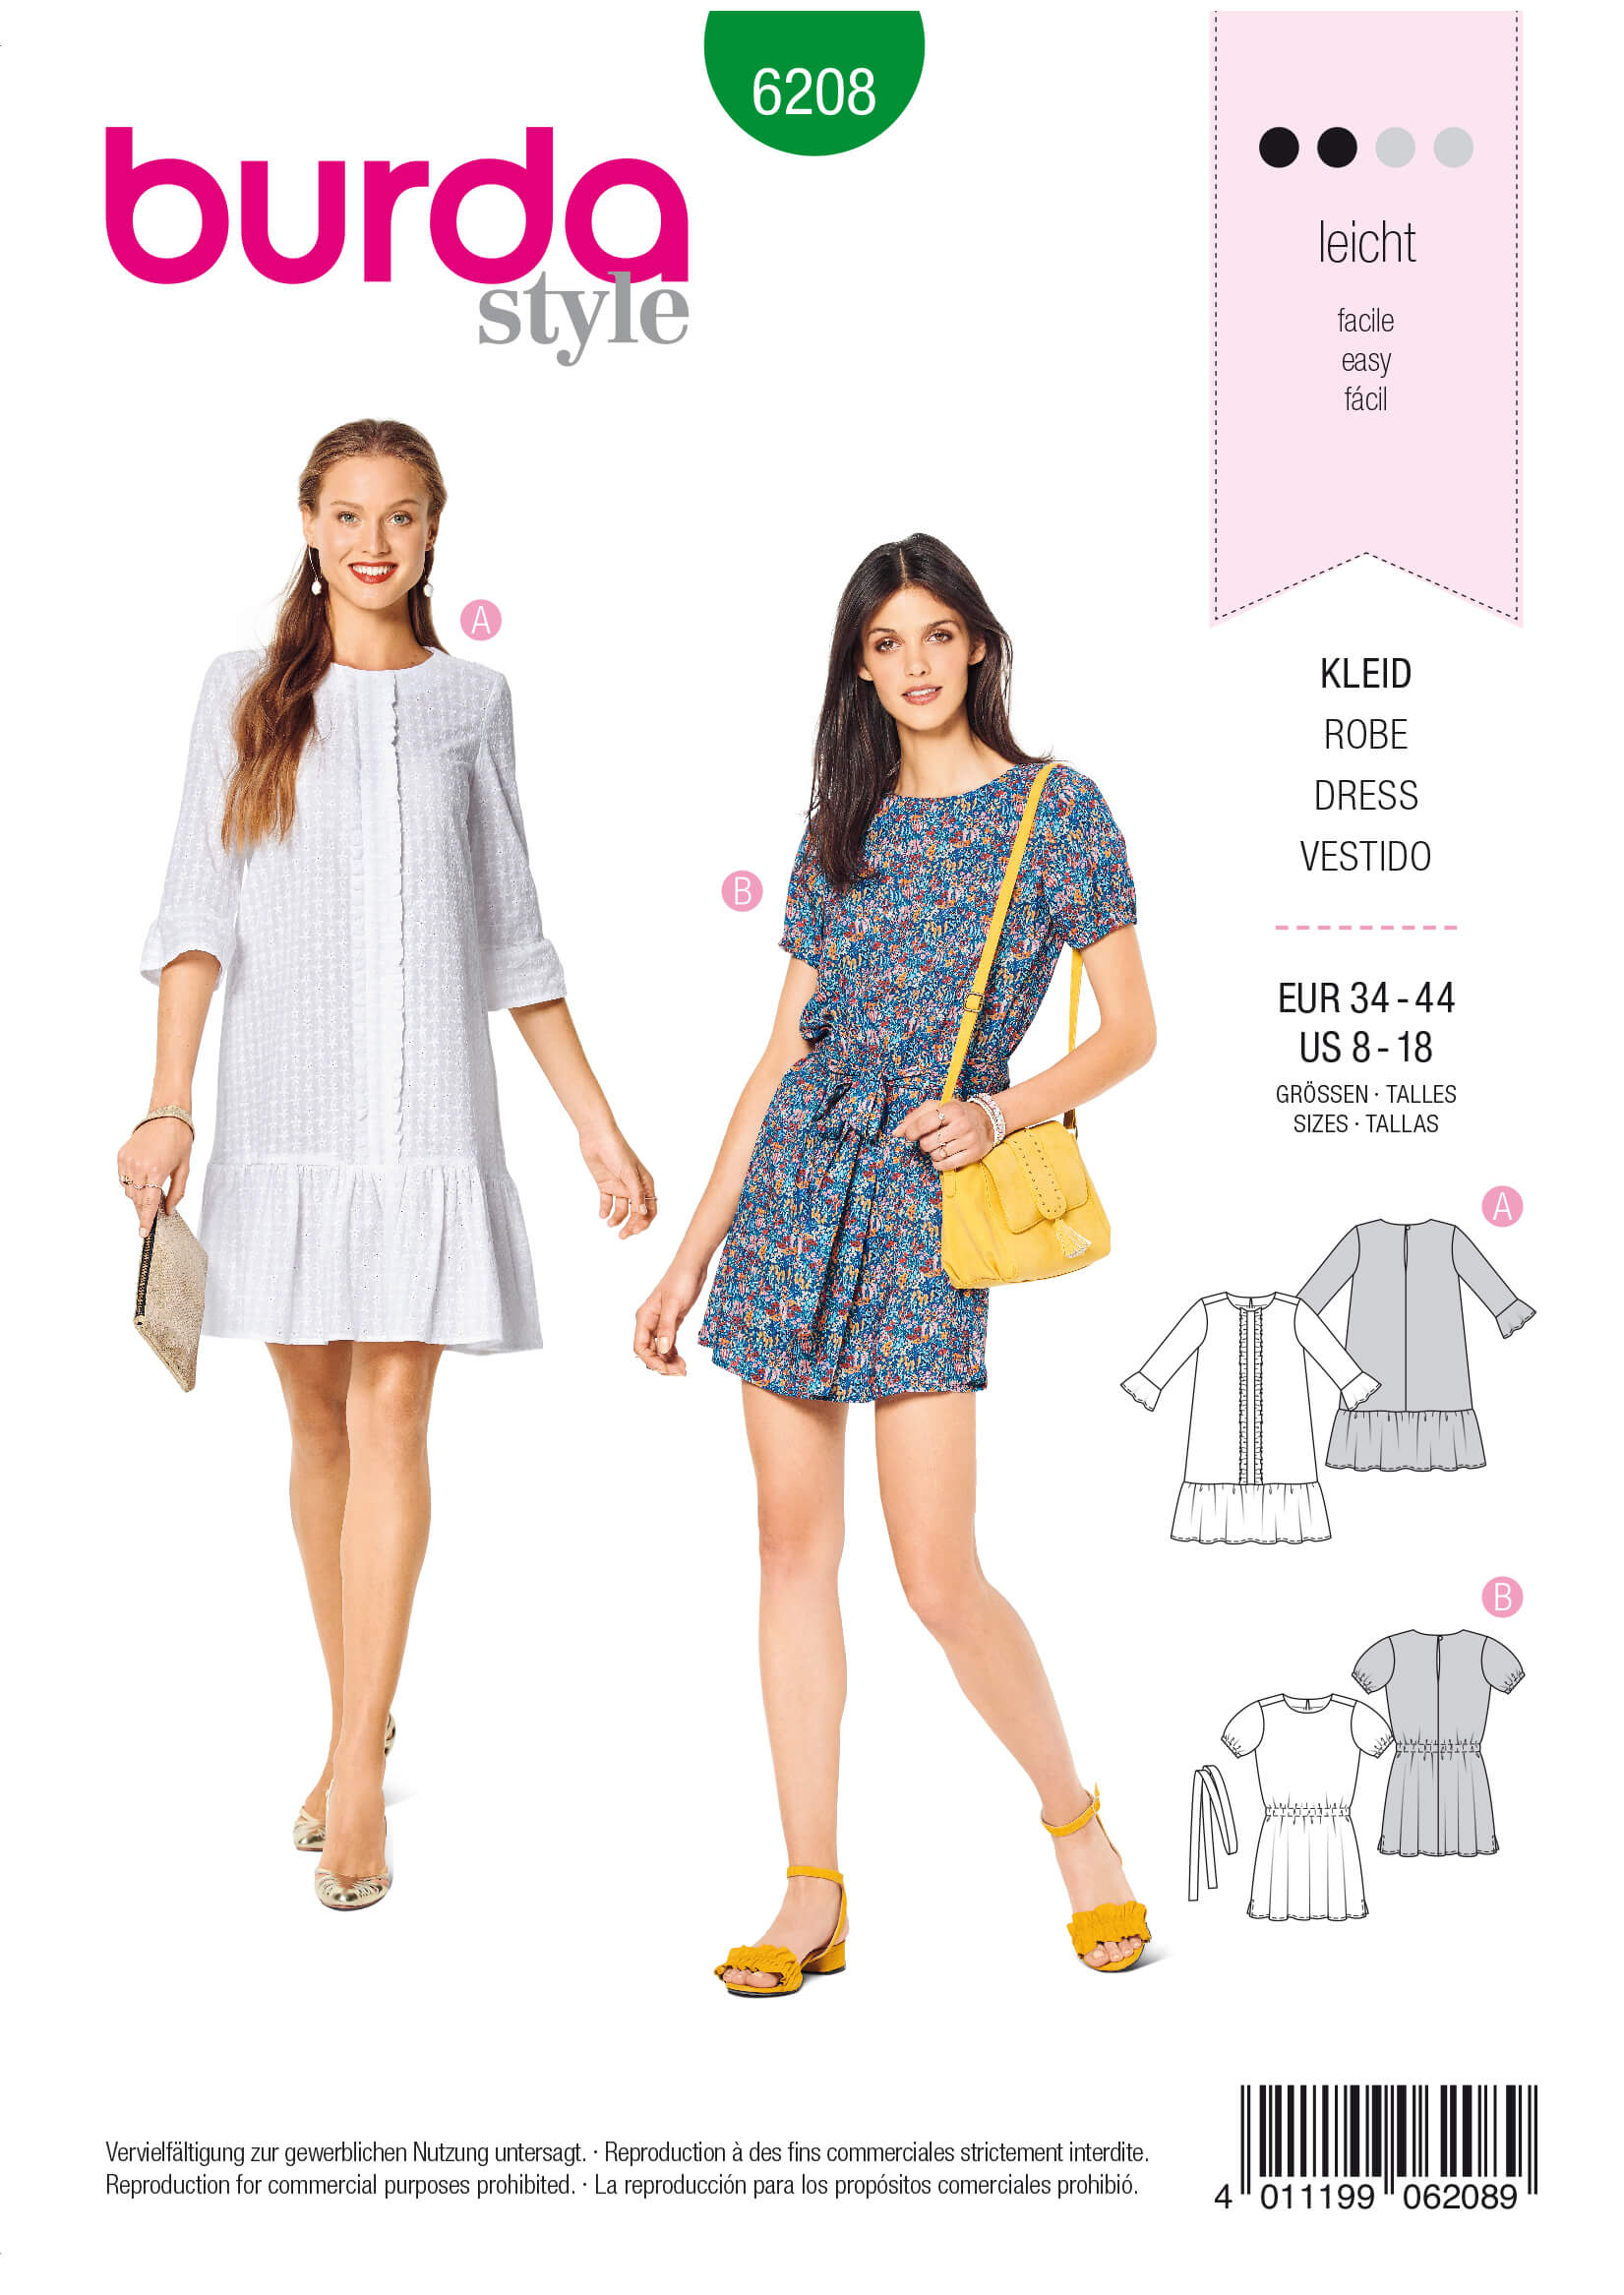 Dress Patterns - Sewdirect Australia - Page 6 - Sewdirect Australia